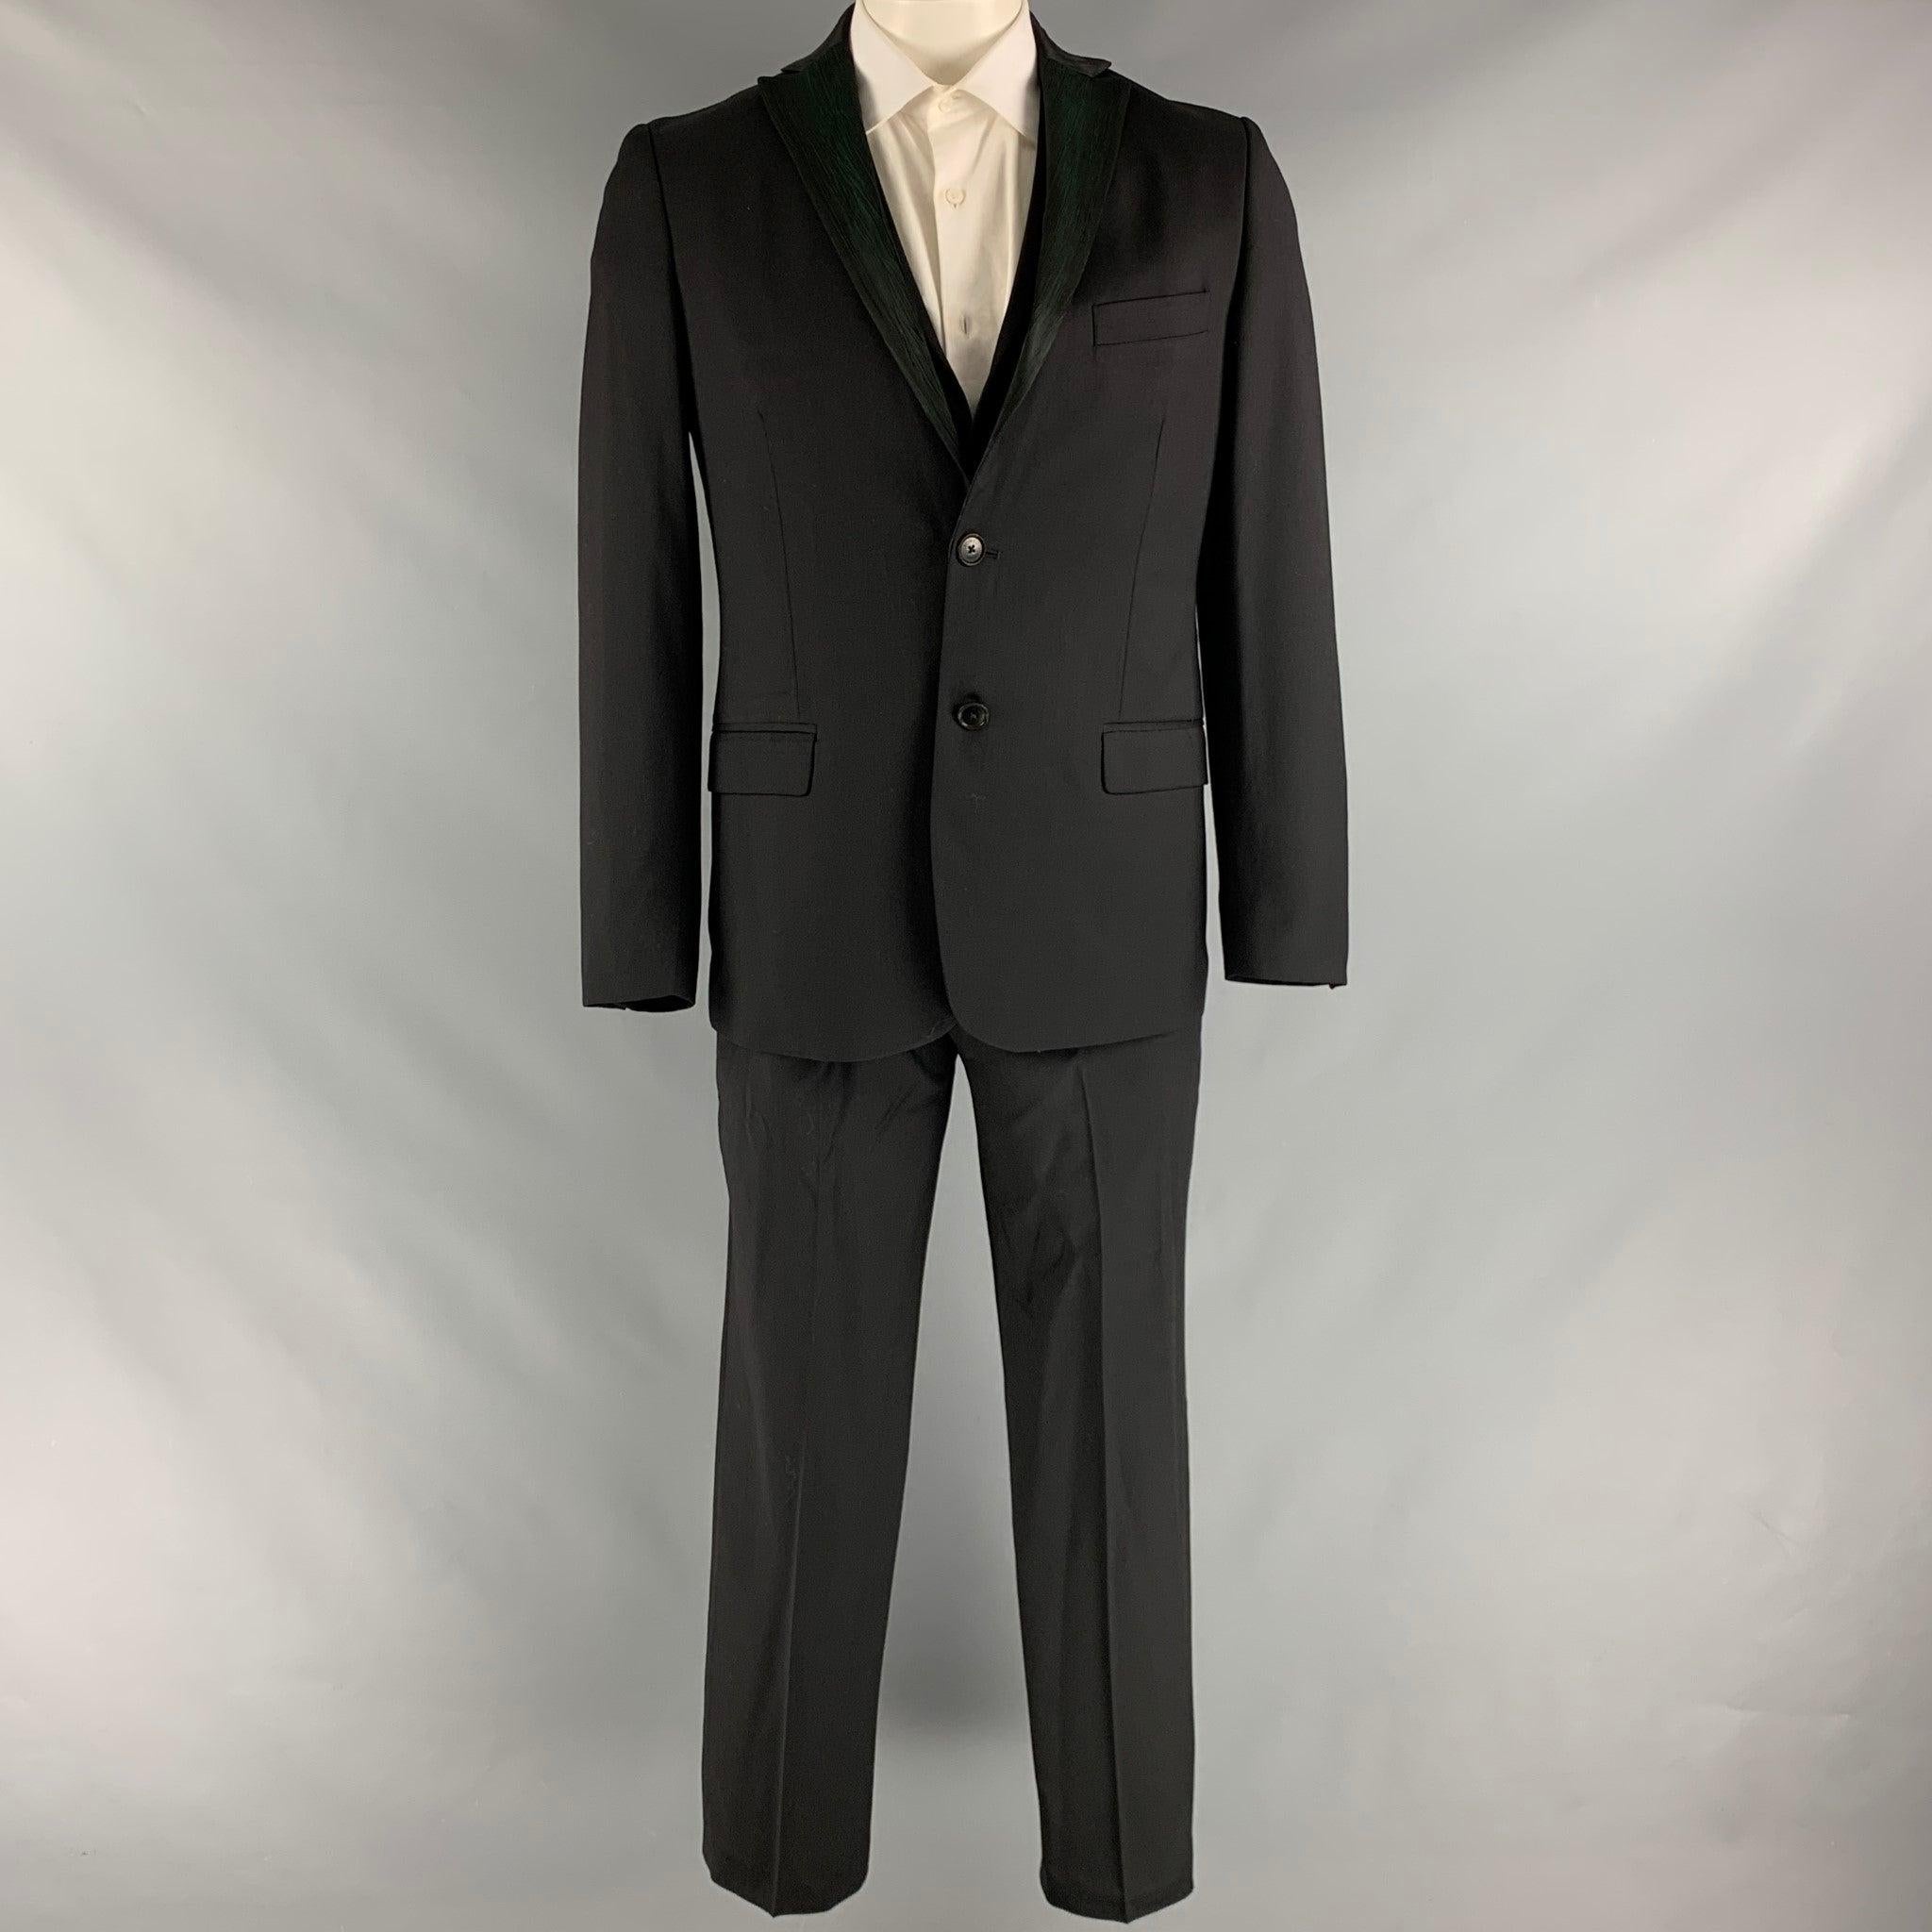 Le costume 3 pièces de Romeo GIGLI est en laine tissée noire et verte avec une doublure complète. Il comprend un manteau de sport à double boutonnage à revers échancré, un gilet assorti et un pantalon à devant plat. Fabriqué en Italie. Excellent